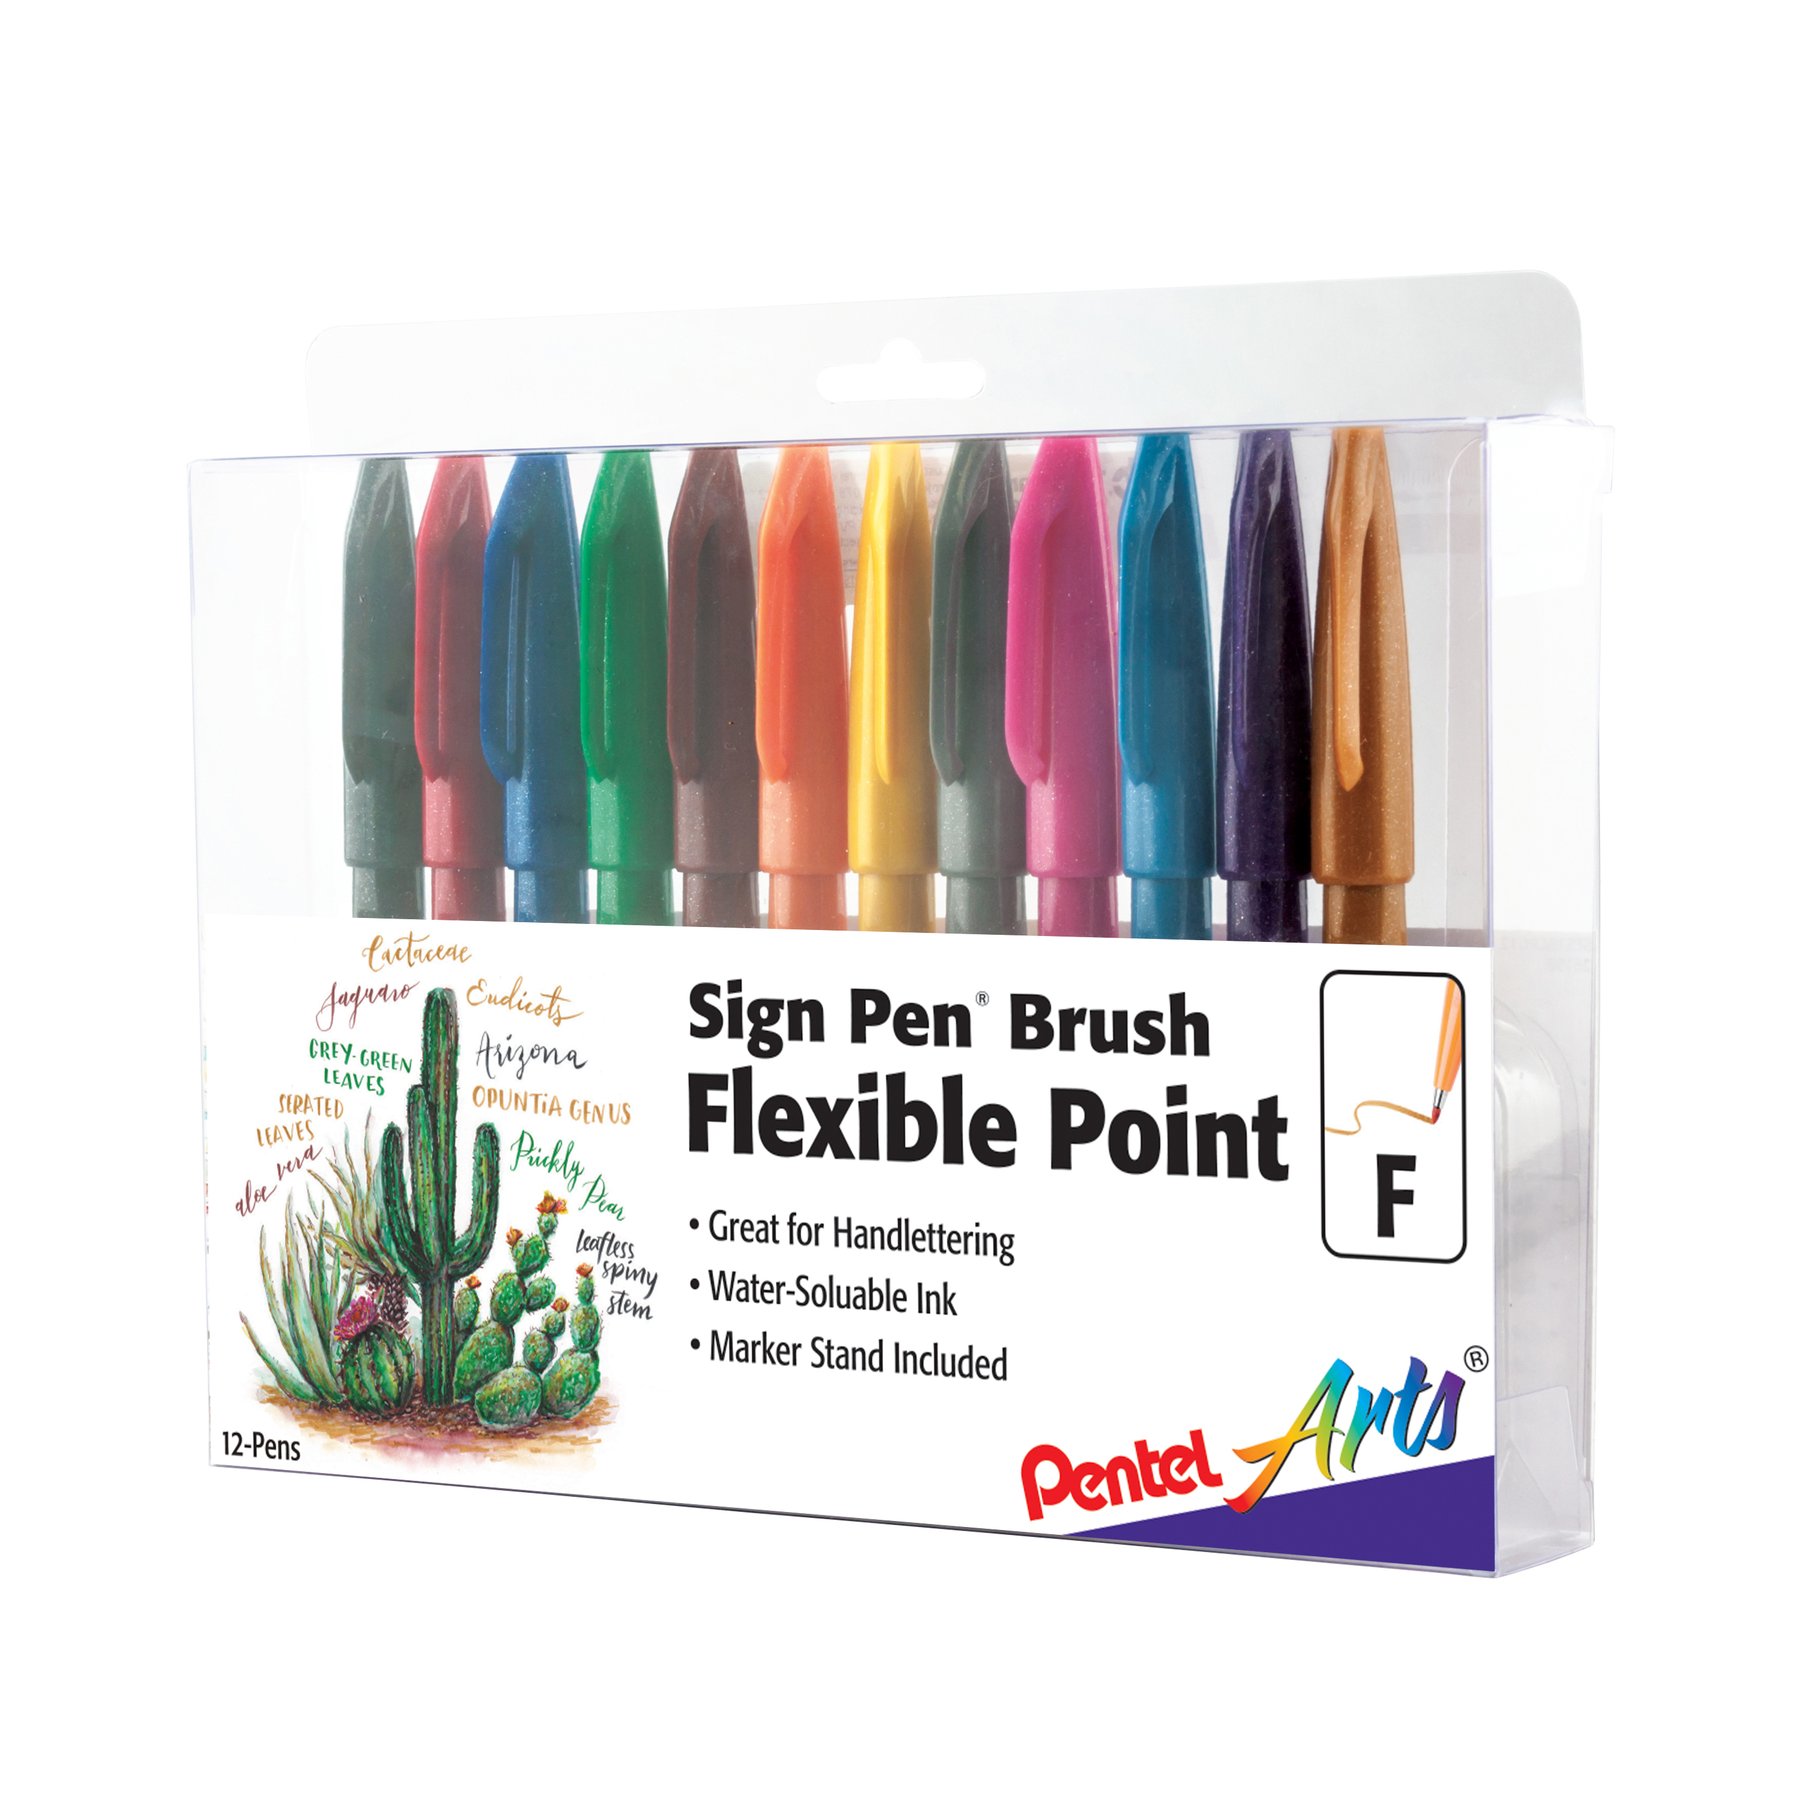 Pental Sign Pen Brush: Flexible Point